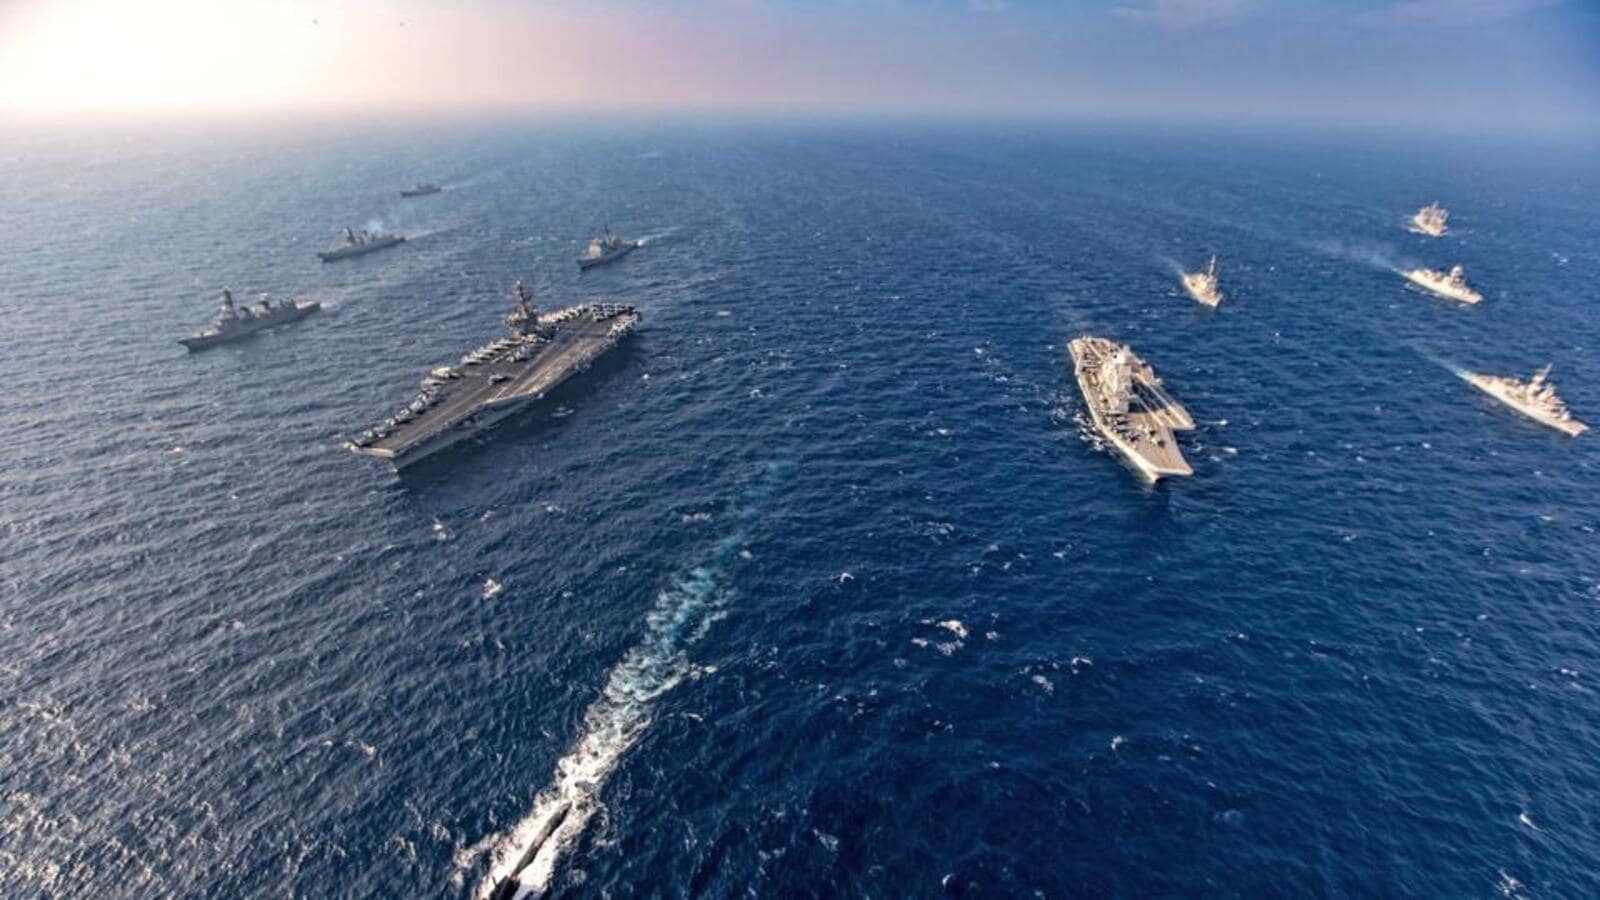 EE. UU. ayudará a India a proyectar fuerzas para contrarrestar la actividad naval china: funcionario de EE. UU. |  Últimas noticias India